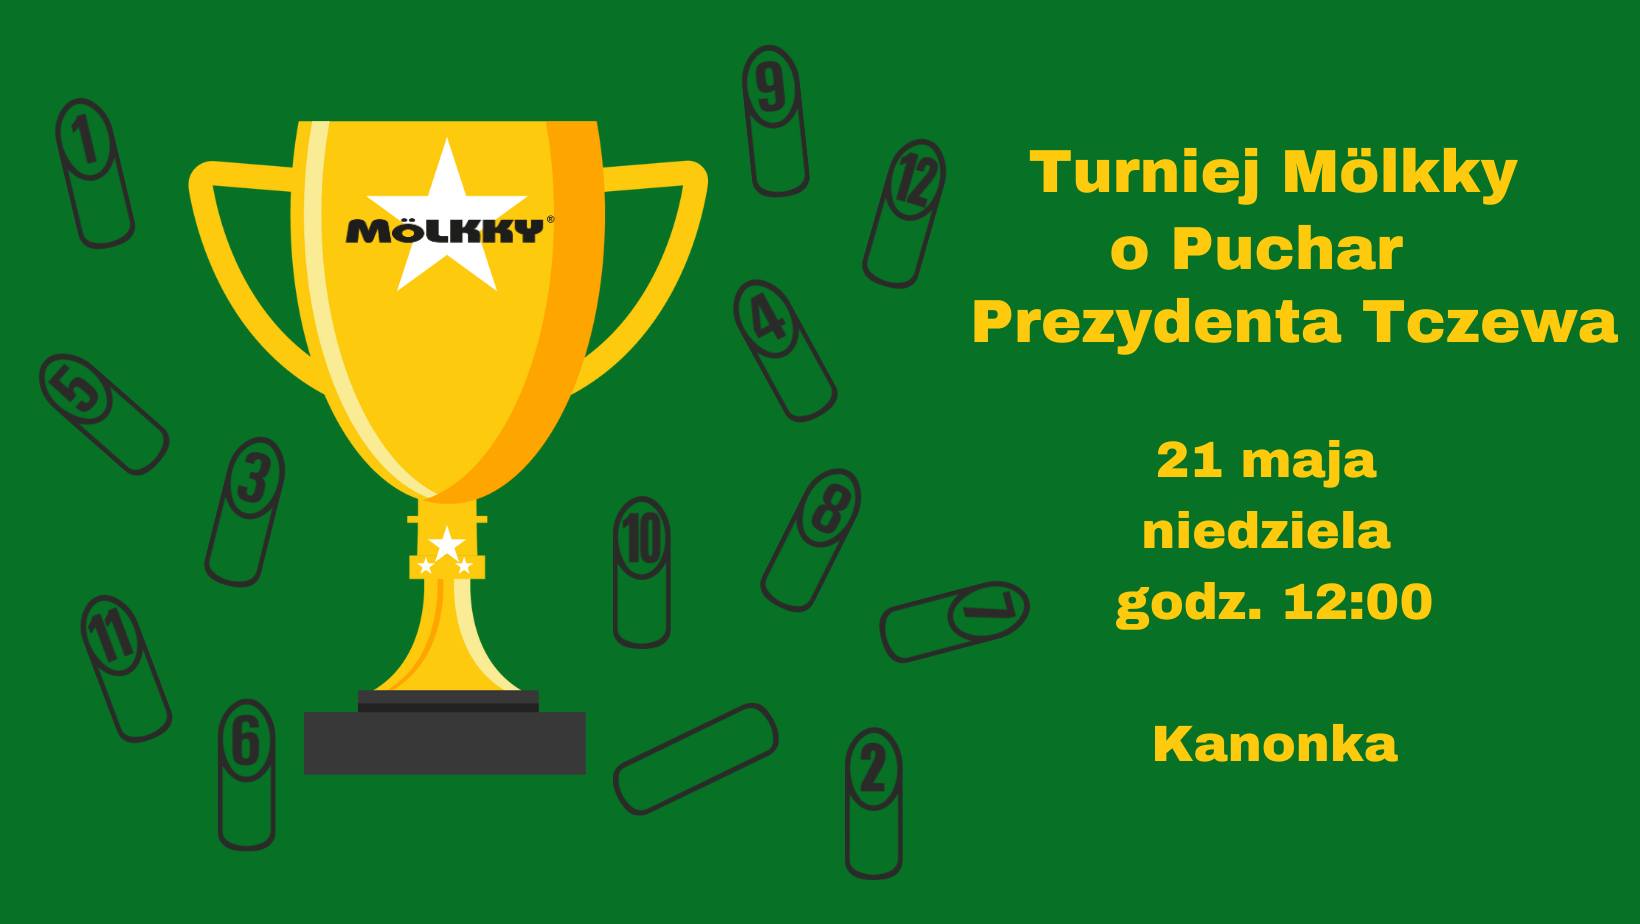 Turniej Mölkky o Puchar Prezydenta Tczewa